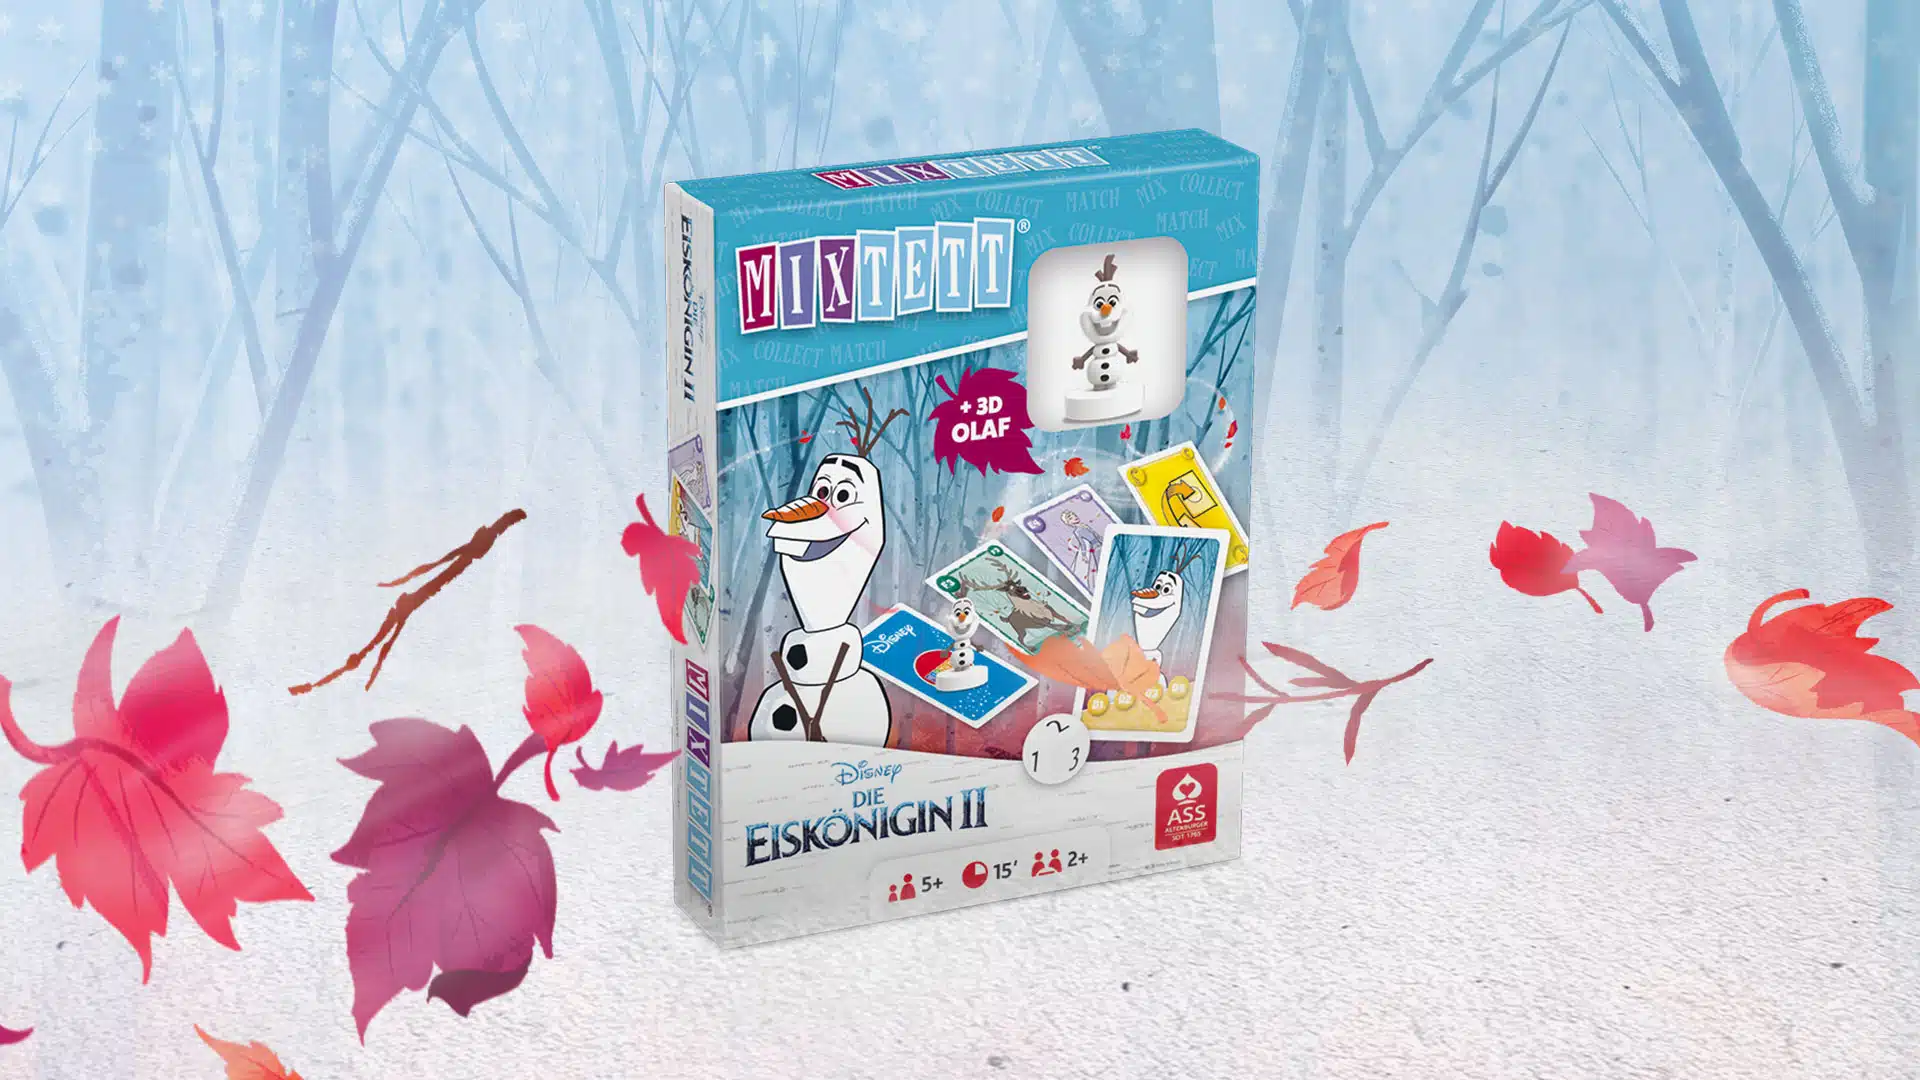 Das Disney Die Eiskoenigin 2 Mixtett Olaf Spiel steht auf einem verschneitem Untergrund. Im Hintergrund ist ein verschneiter Wald zu erkennen, um das Spiel herum fliegen ein paar bunte Laubblätter im Wind.